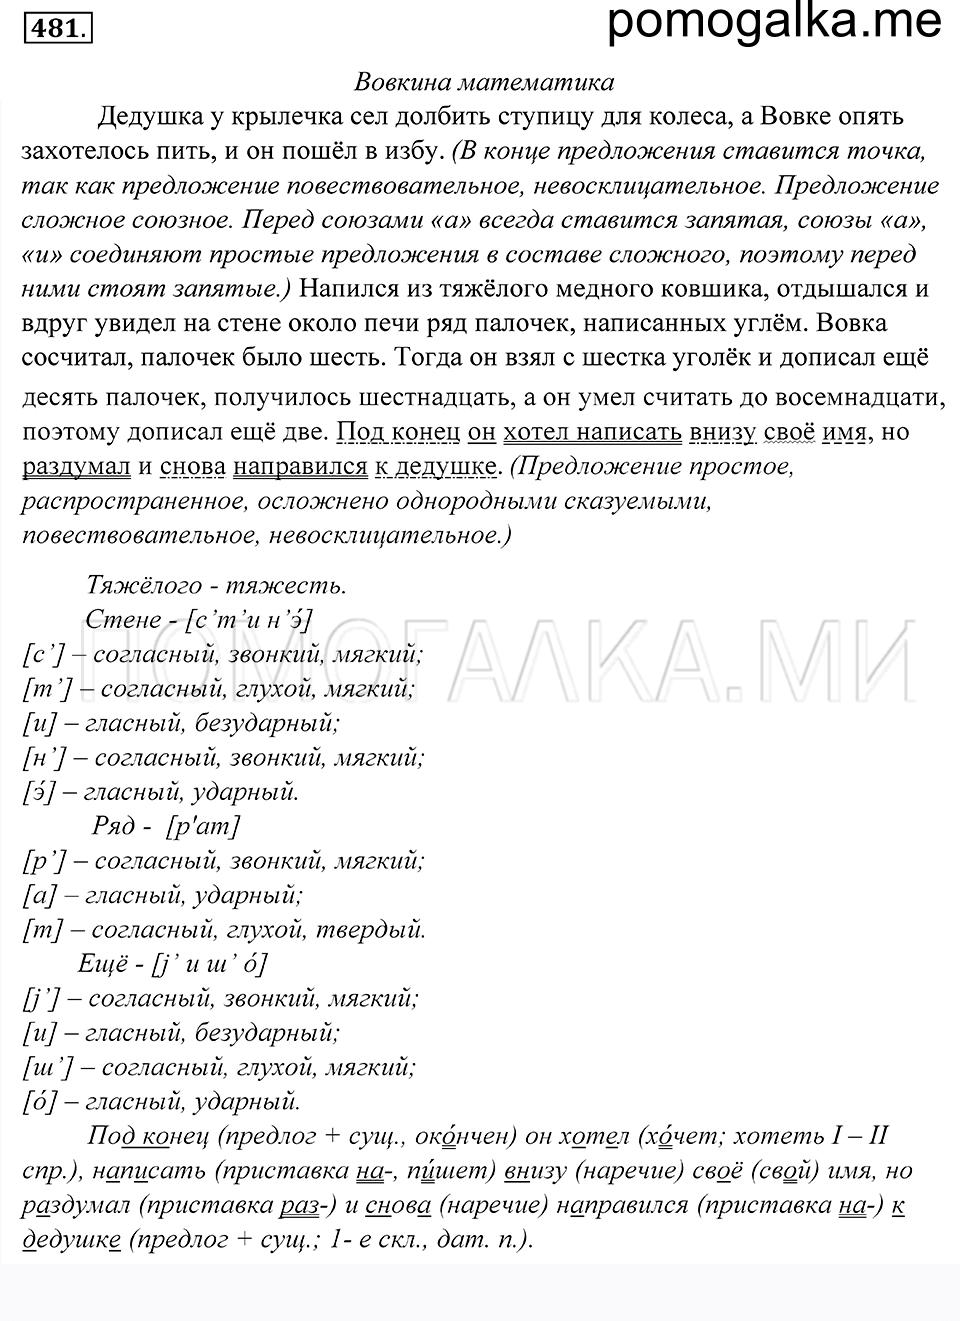 упражнение 481 русский язык 5 класс Купалова 2012 год